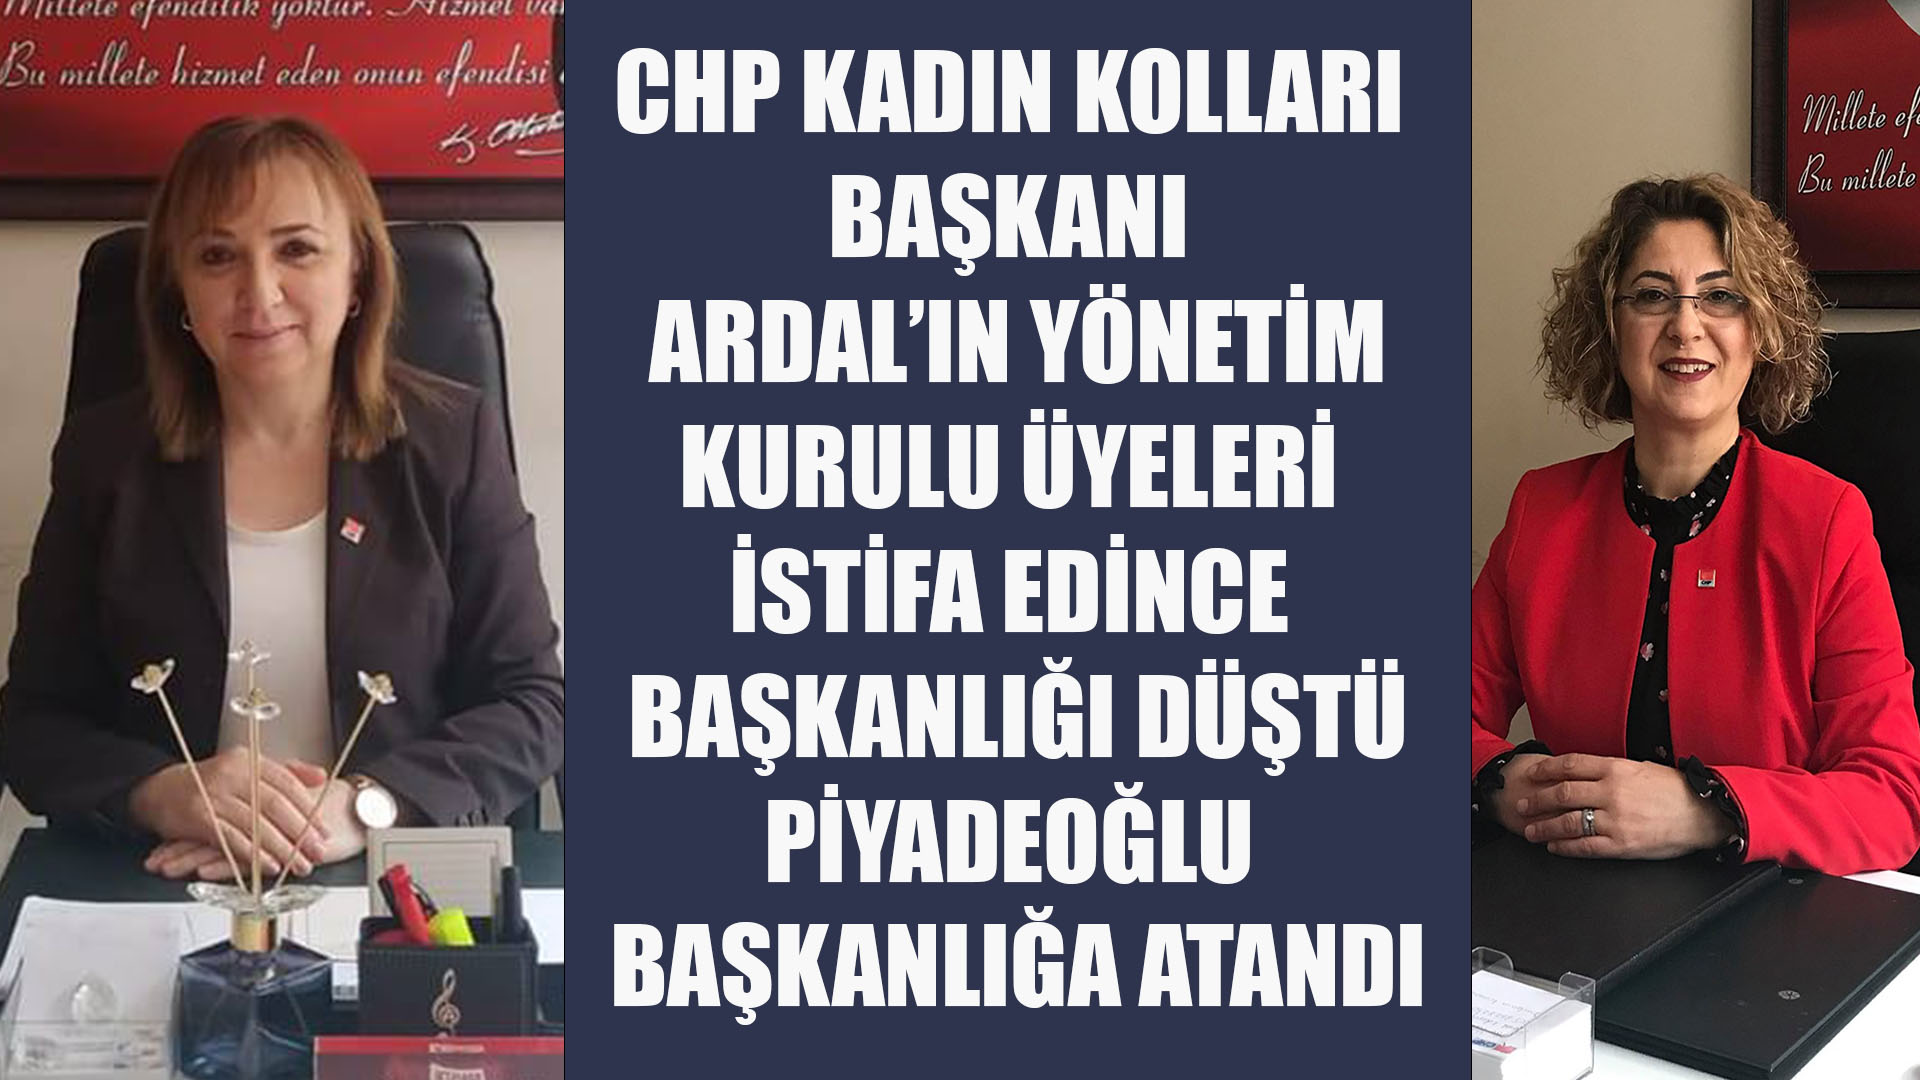 CHP Rize kadın kolları yönetim kurulu üyeleri istifa edince Ardal’ın başkanlığı düştü